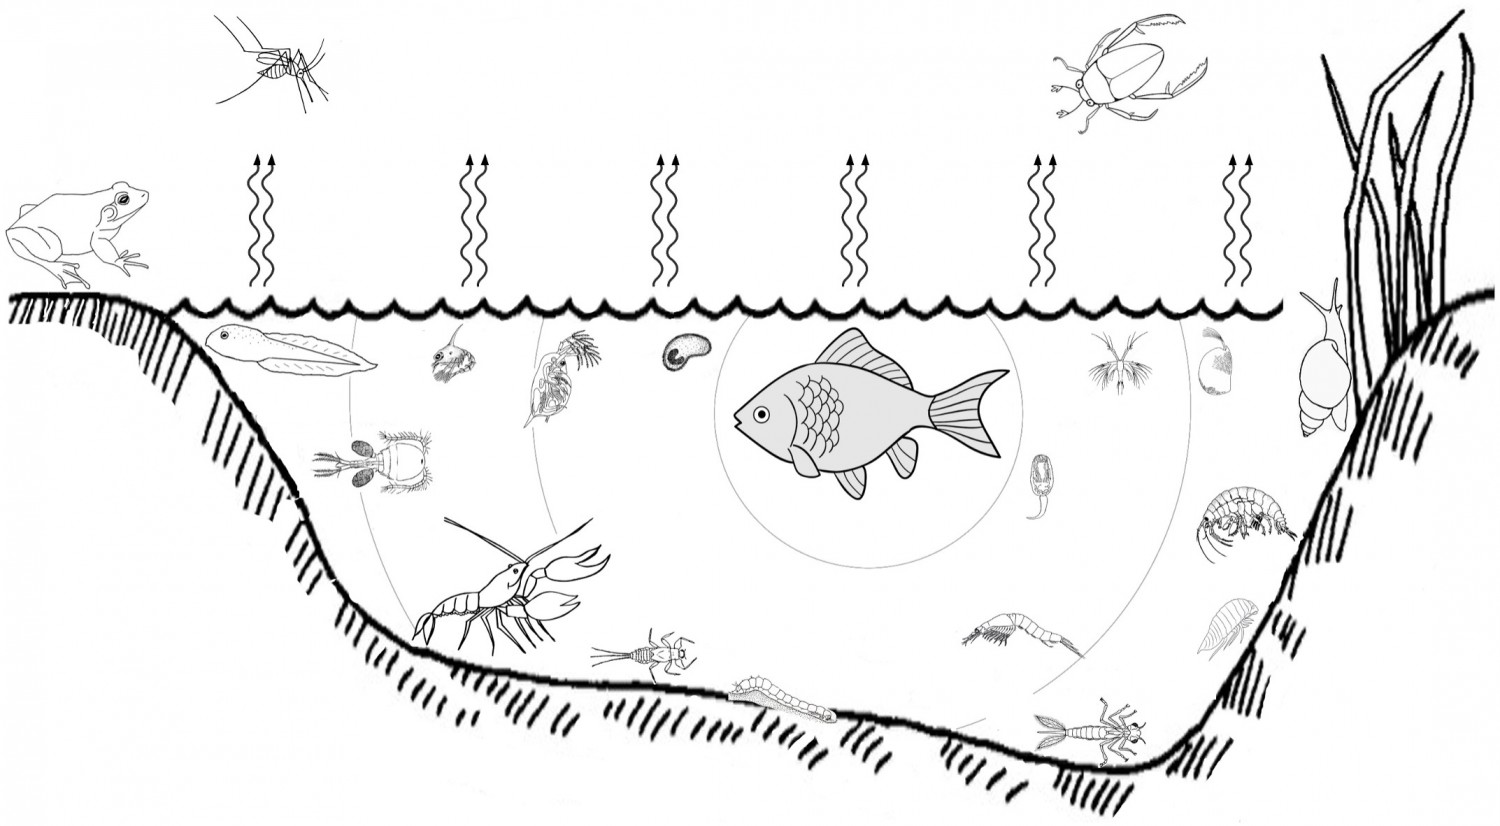 Ихтиологи МГУ систематизировали реакции водных животных на сигналы рыб